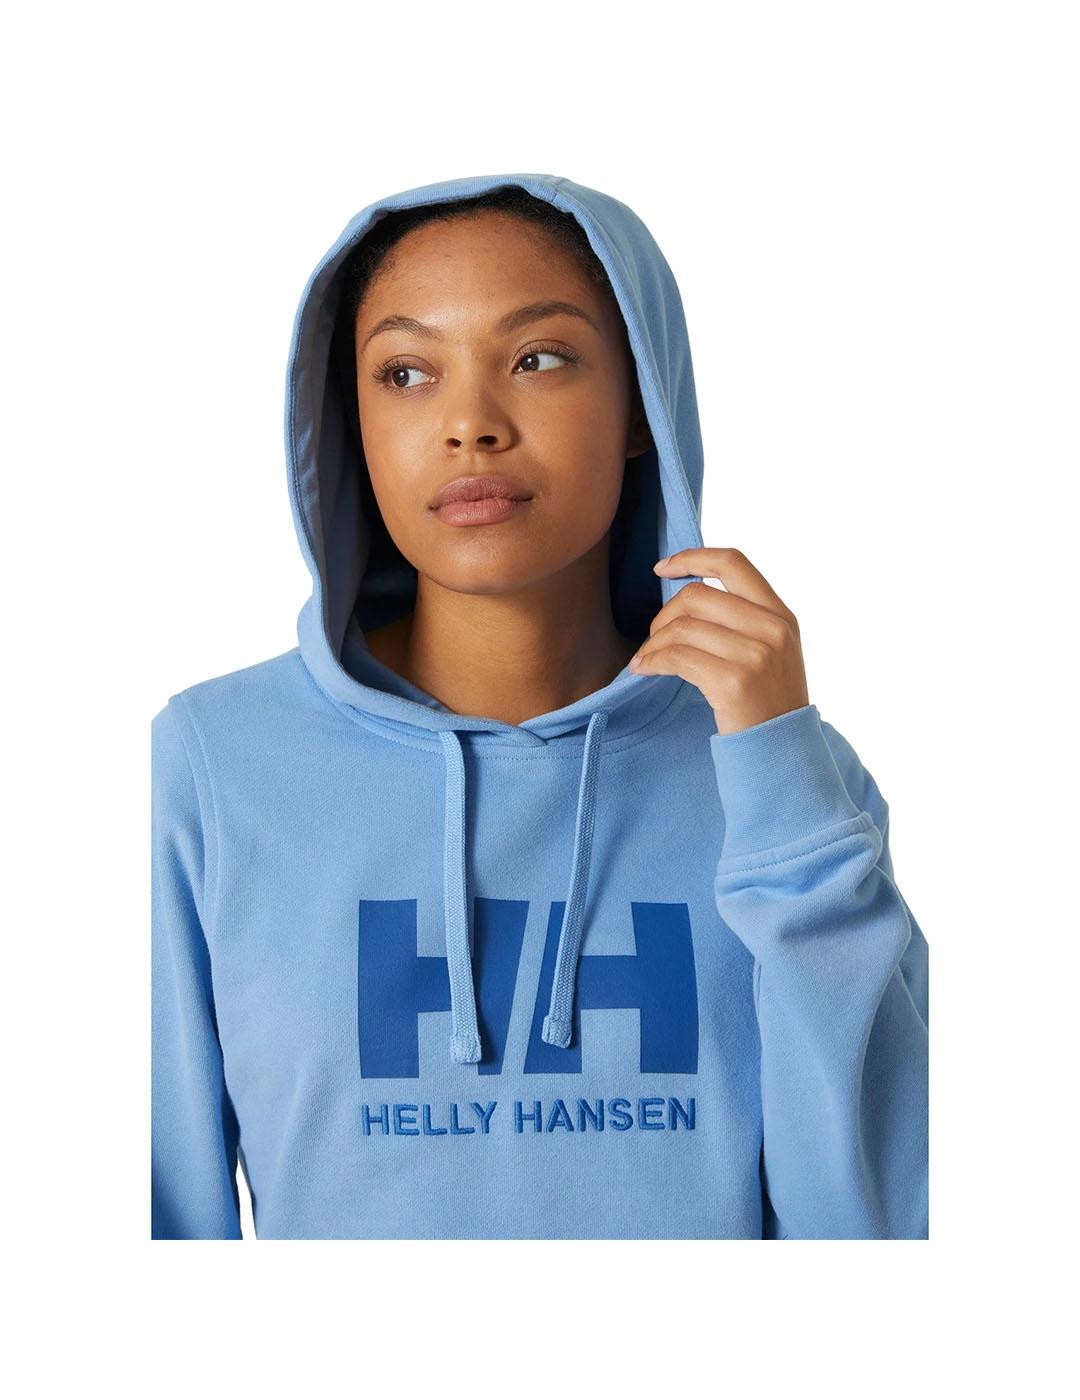 Chaqueta Helly Hansen Crew azul celeste con capucha de m